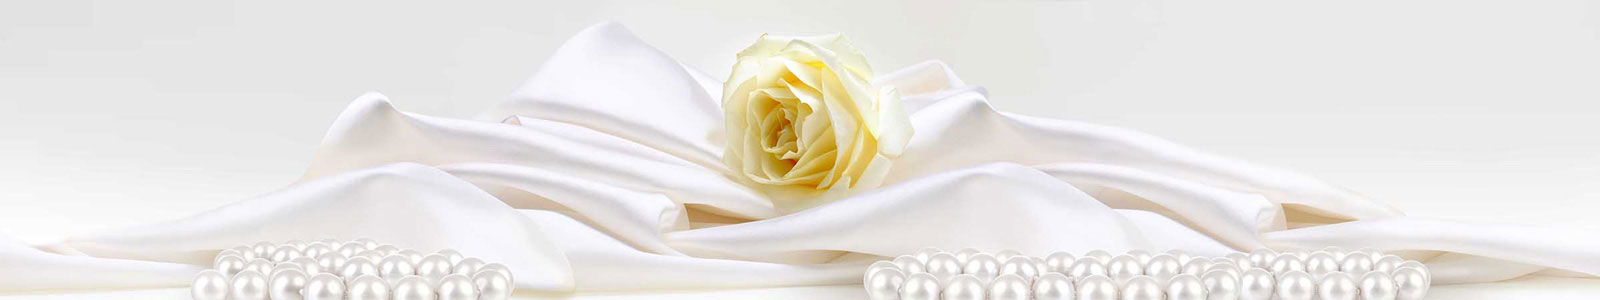 №3881 - Жемчуг у белой розы, лежащей на шелке